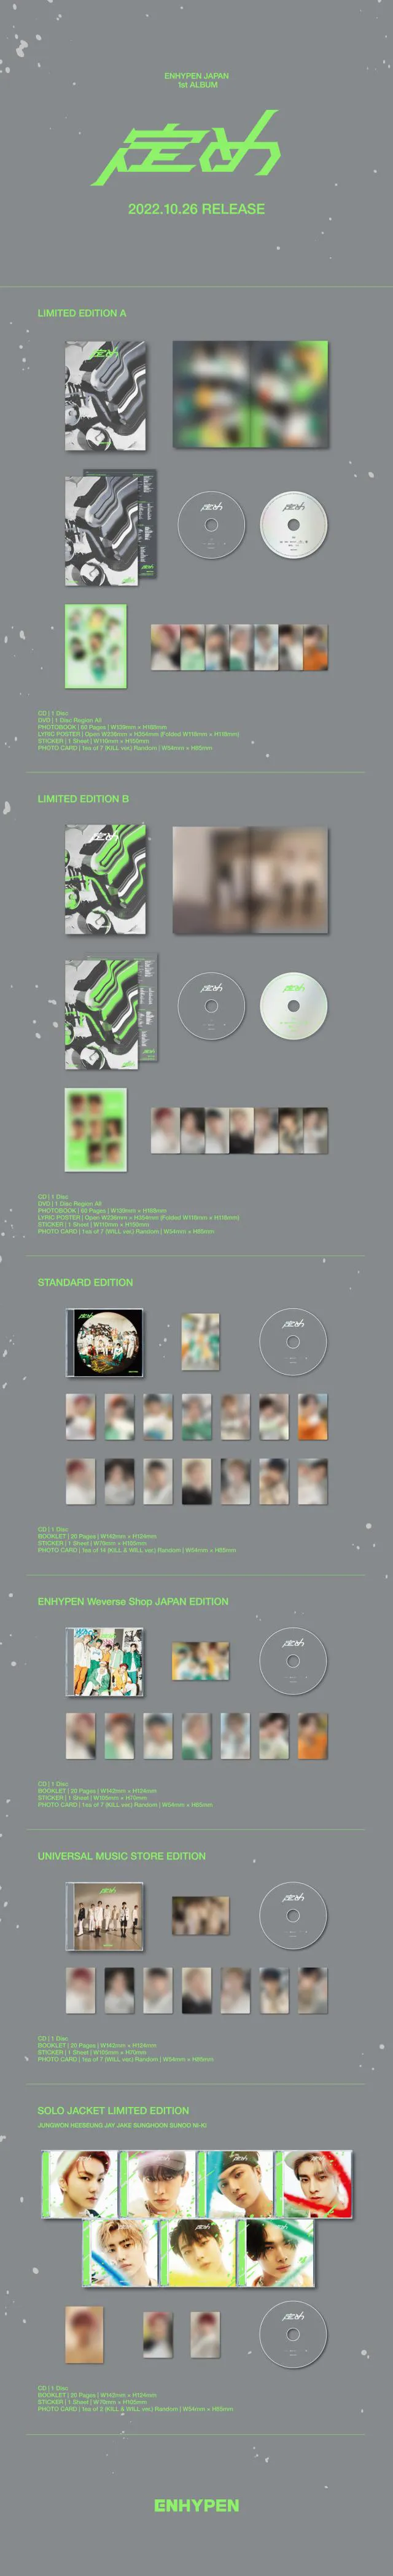 【写真】ENHYPEN 1stアルバム「定め」全形態のセット内容公開